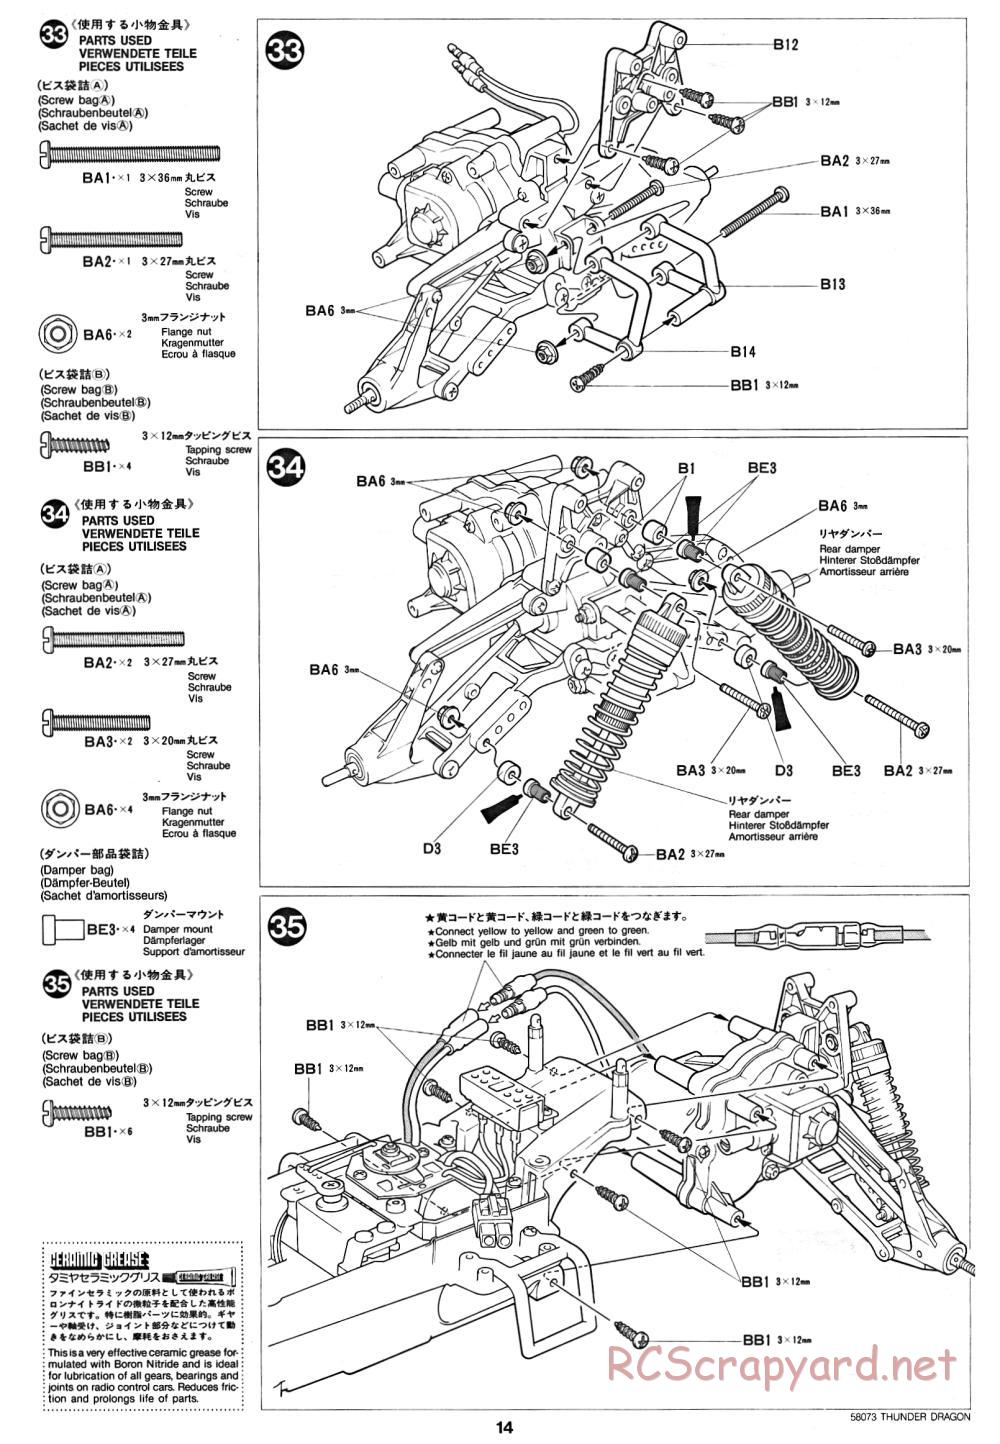 Tamiya - Thunder Dragon - 58073 - Manual - Page 14